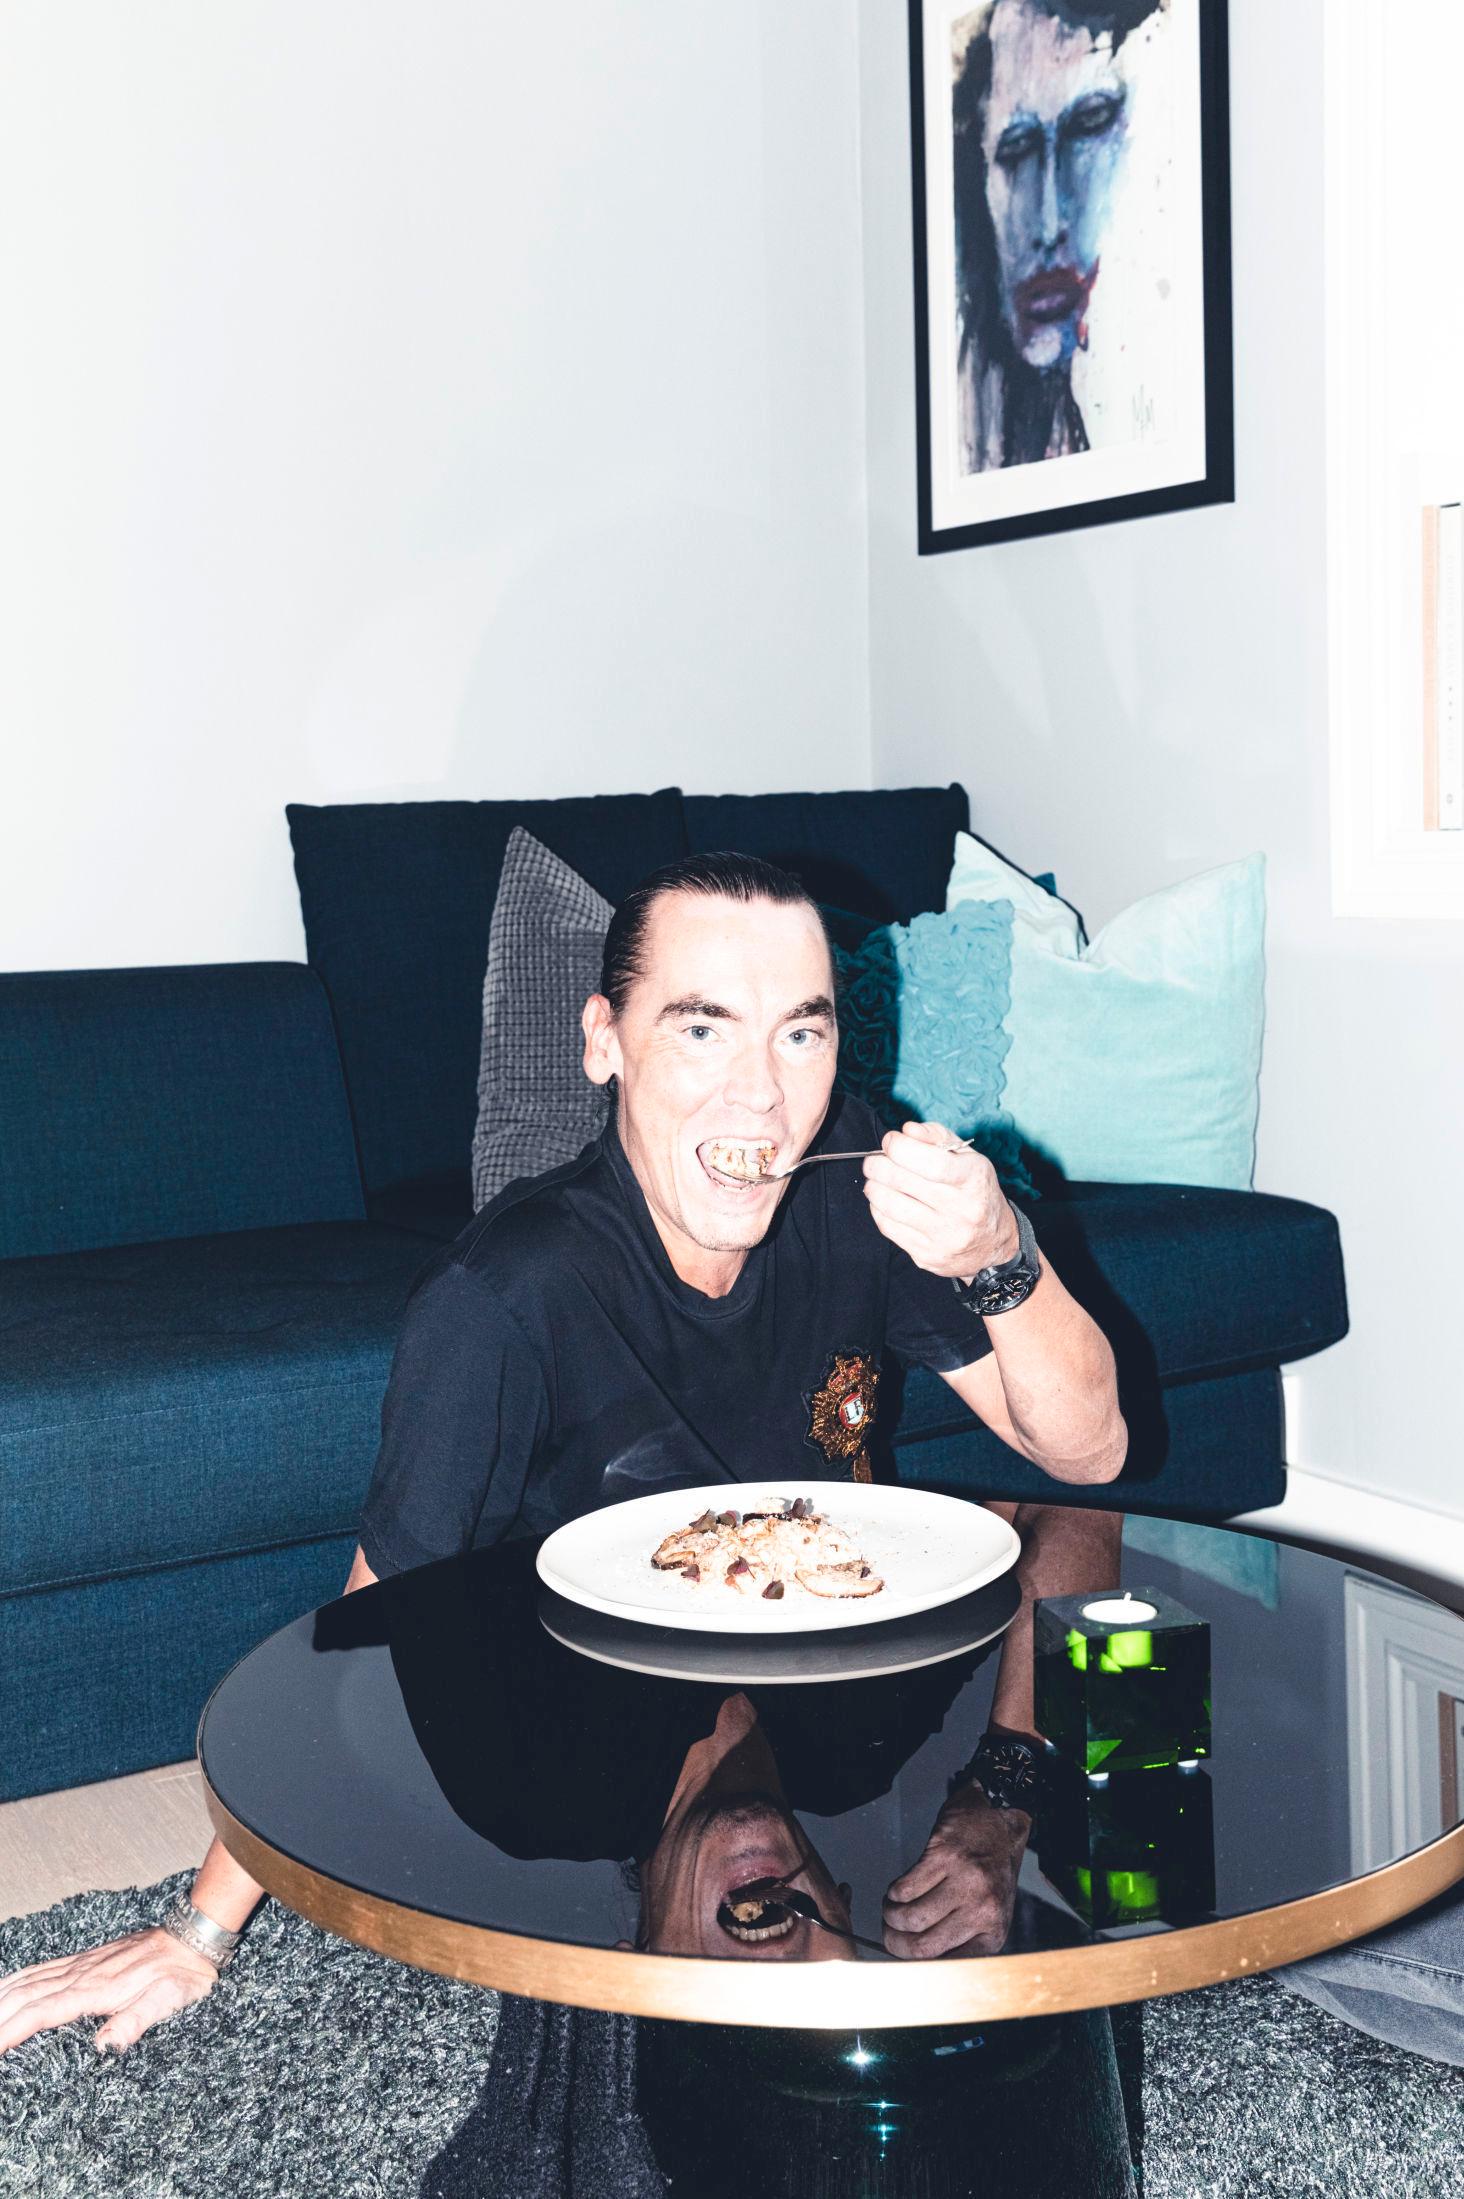 LETT HENSLENGT: 45-åringen liker aller best å spise på gulvet foran TV-en, som alltid står på danske nyheter, ifølge ham selv. Legg også merke til maleriet av Marilyn Manson på veggen over han. Foto: Krister Sørbø/VG